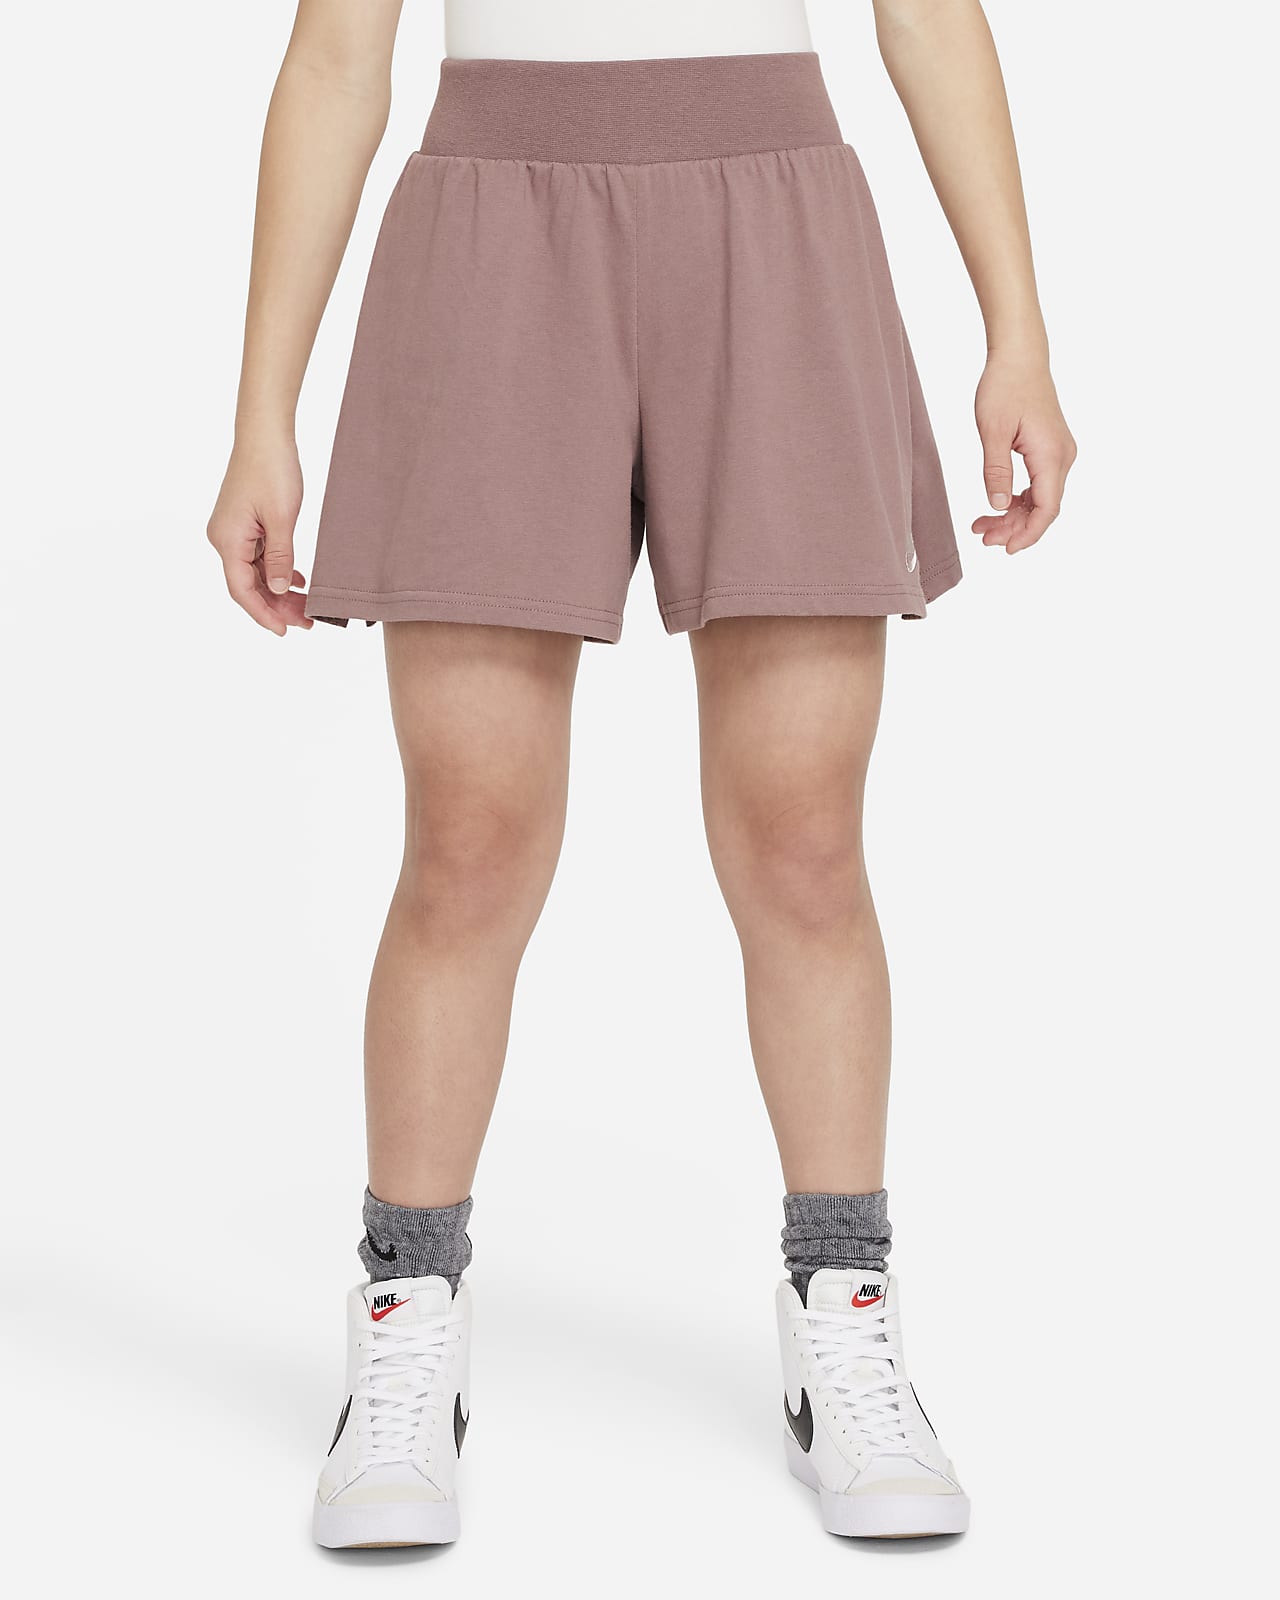 Nike Sportswear Shorts für ältere Kinder (Mädchen)